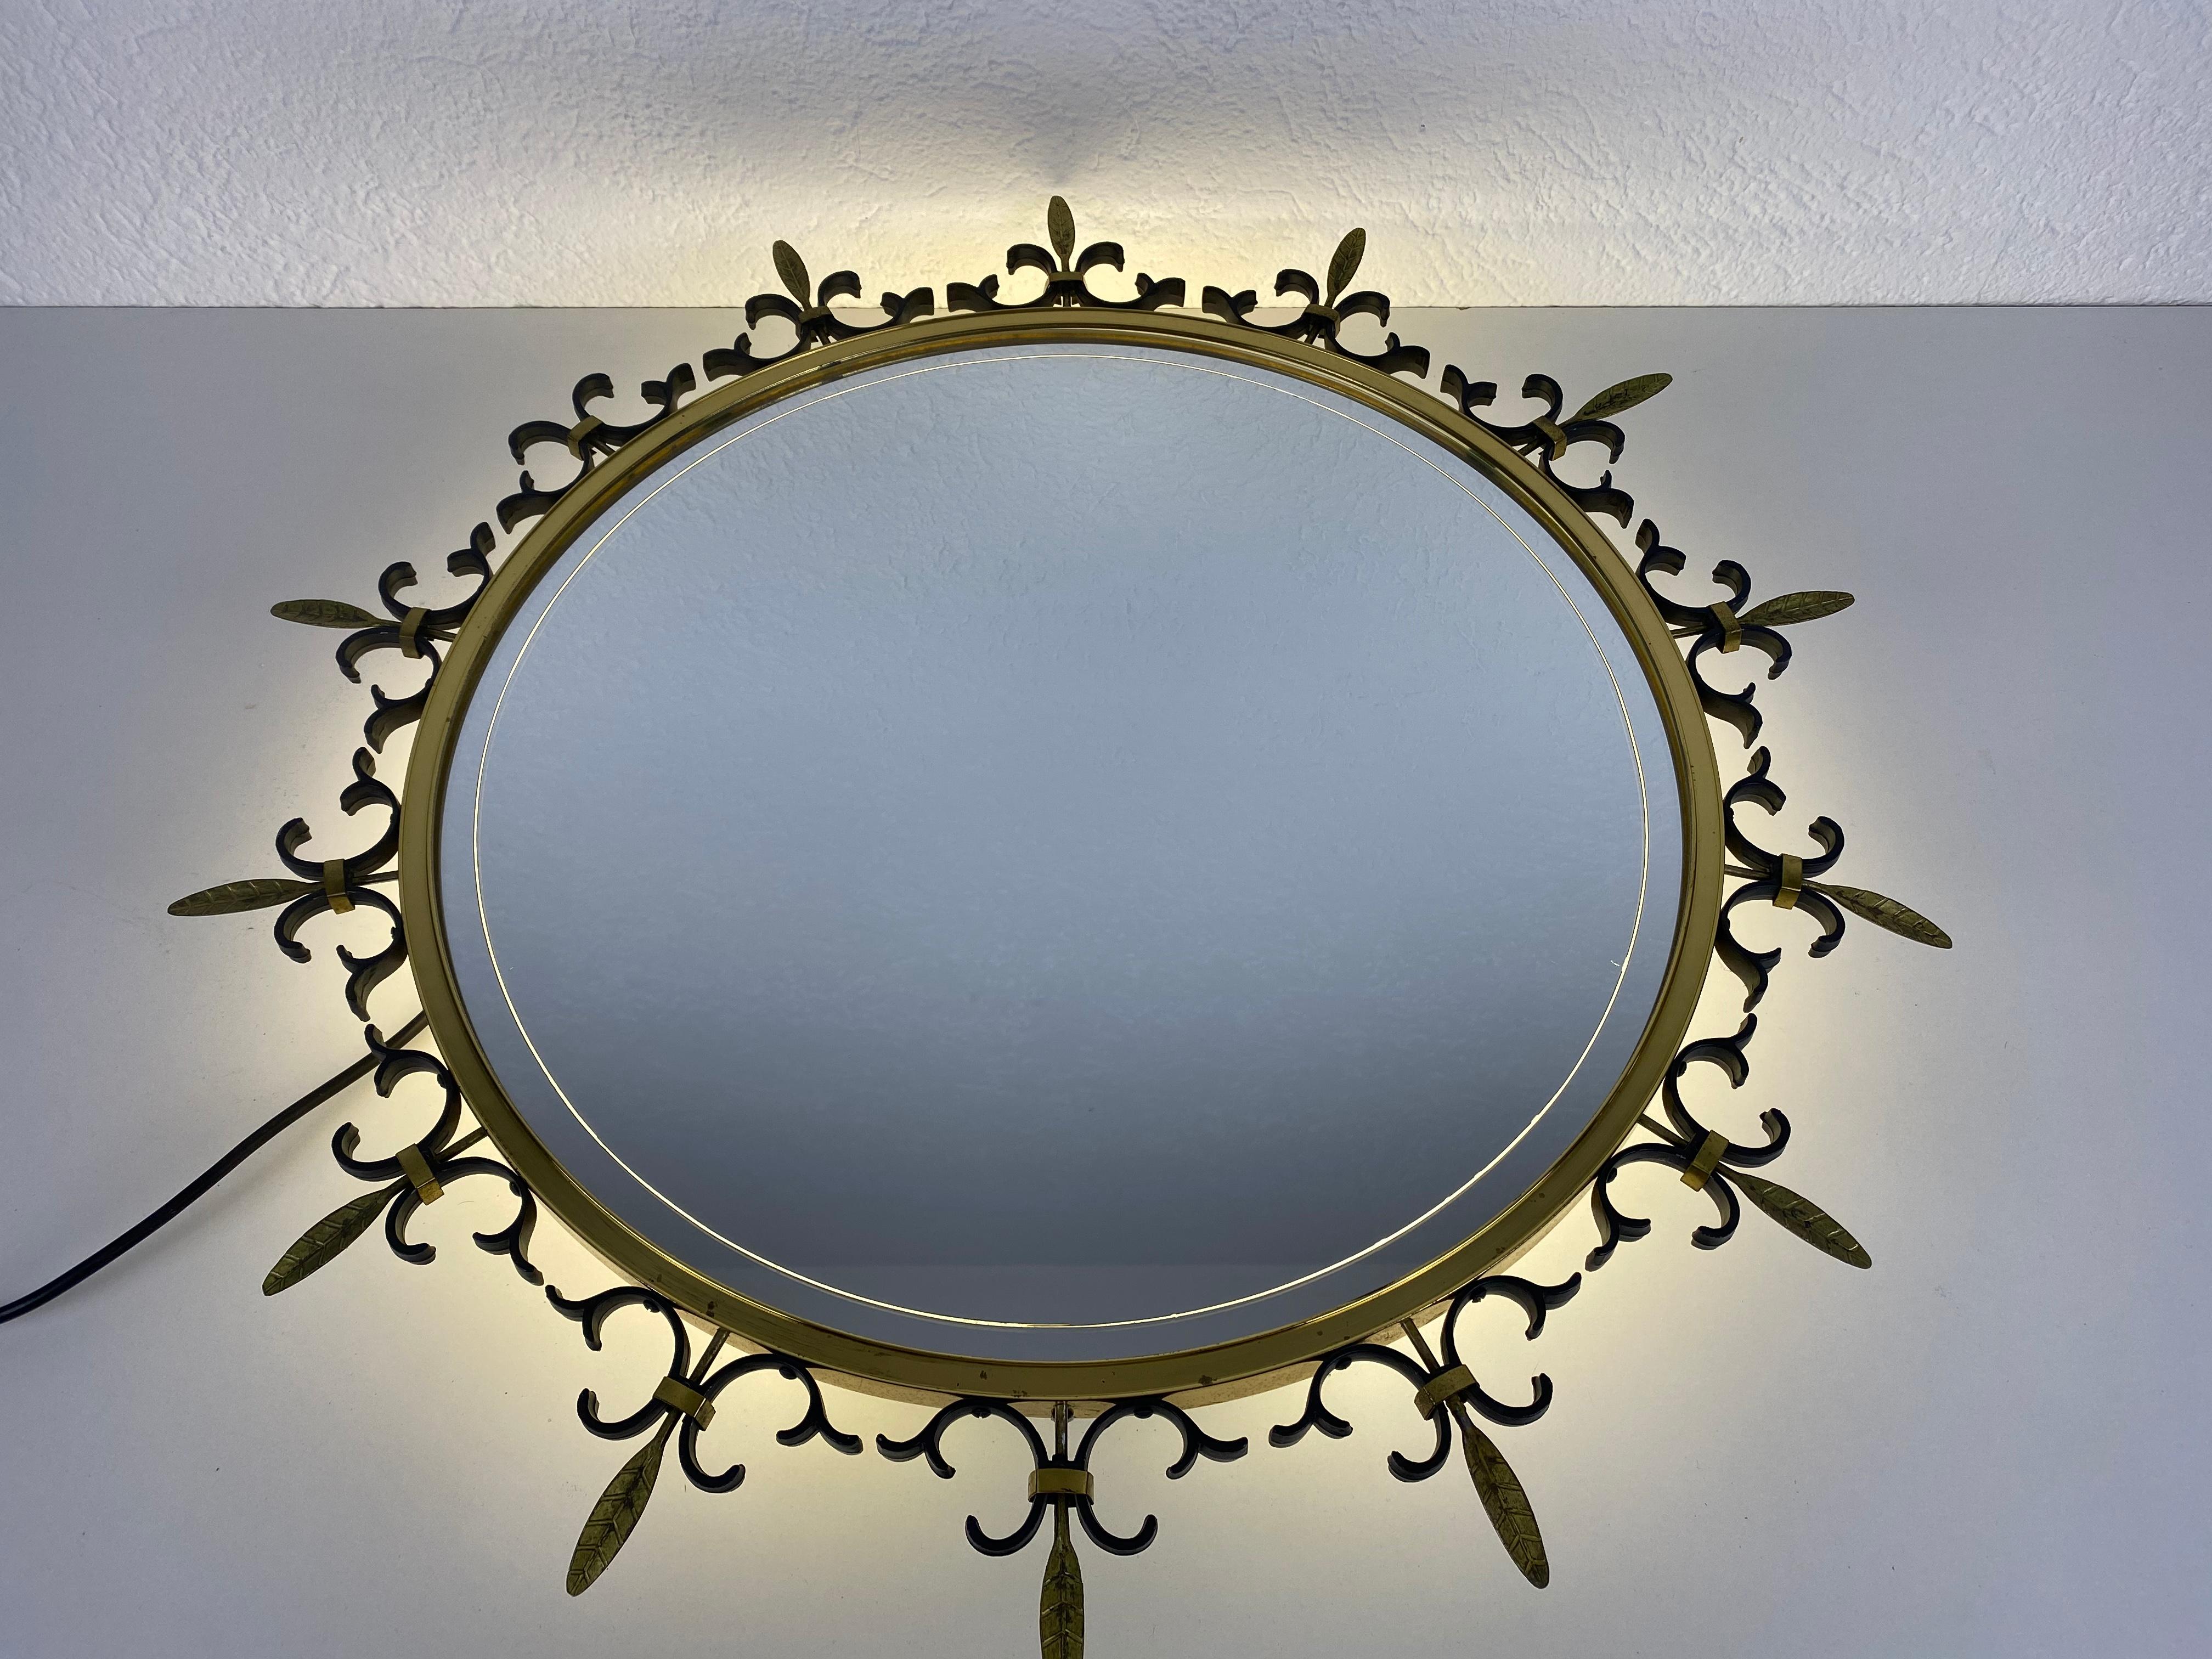 Ein beleuchteter runder Wandspiegel aus den 1960er Jahren, hergestellt in Italien. Der Spiegel hat ein rundes Messingdesign. Der Spiegel ist in einem guten Vintage-Zustand.

Kostenloser weltweiter Standardversand.